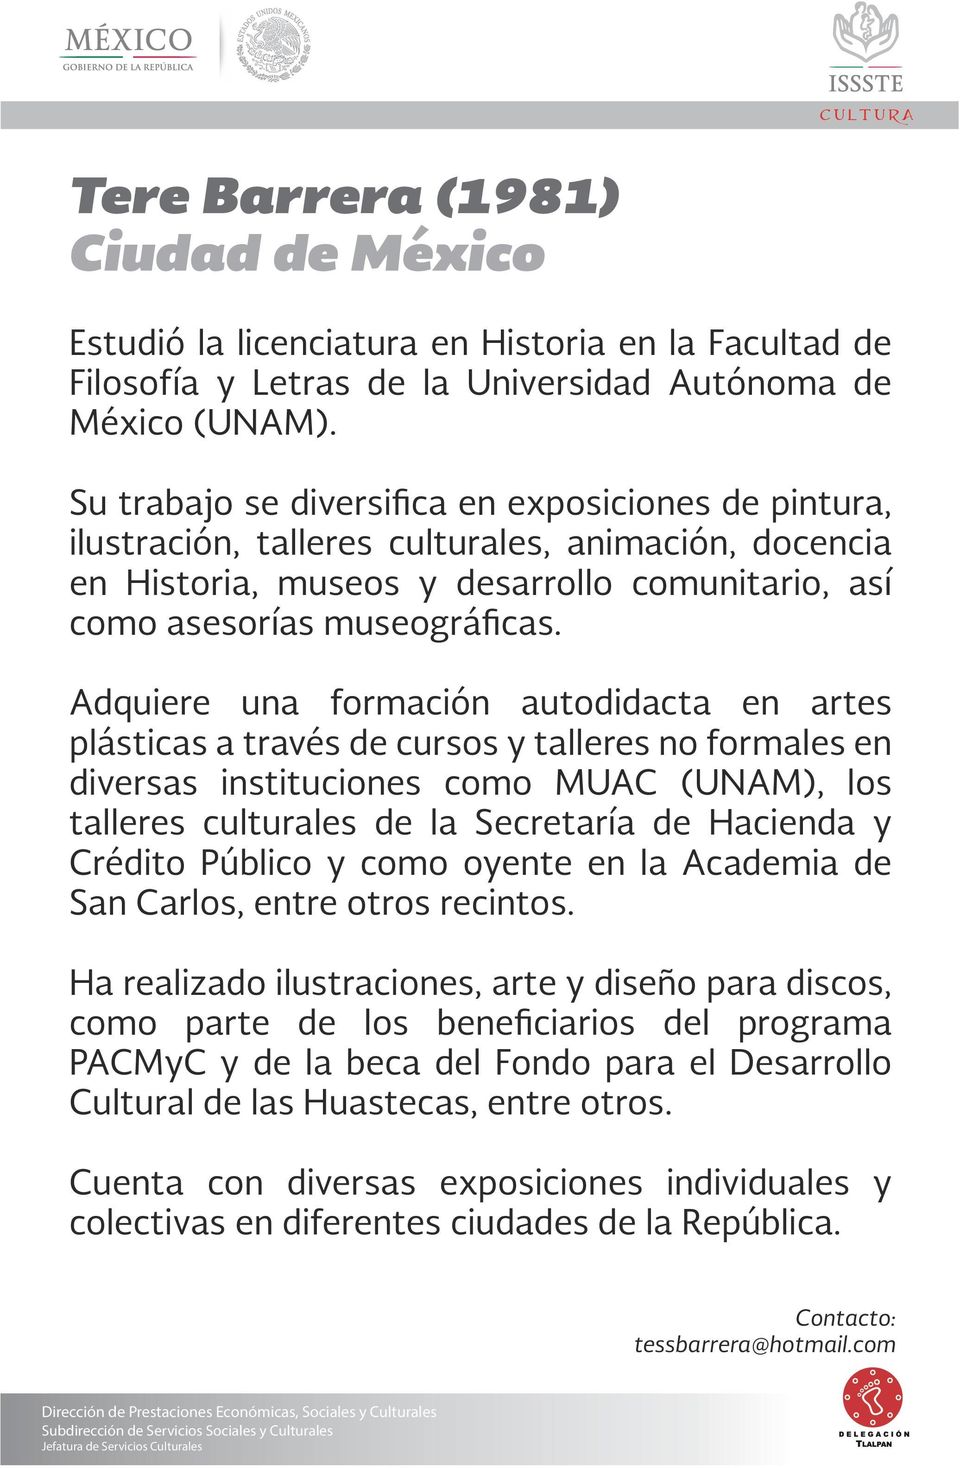 Adquiere una formación autodidacta en artes plásticas a través de cursos y talleres no formales en diversas instituciones como MUAC (UNAM), los talleres les de la Secretaría de Hacienda y Crédito